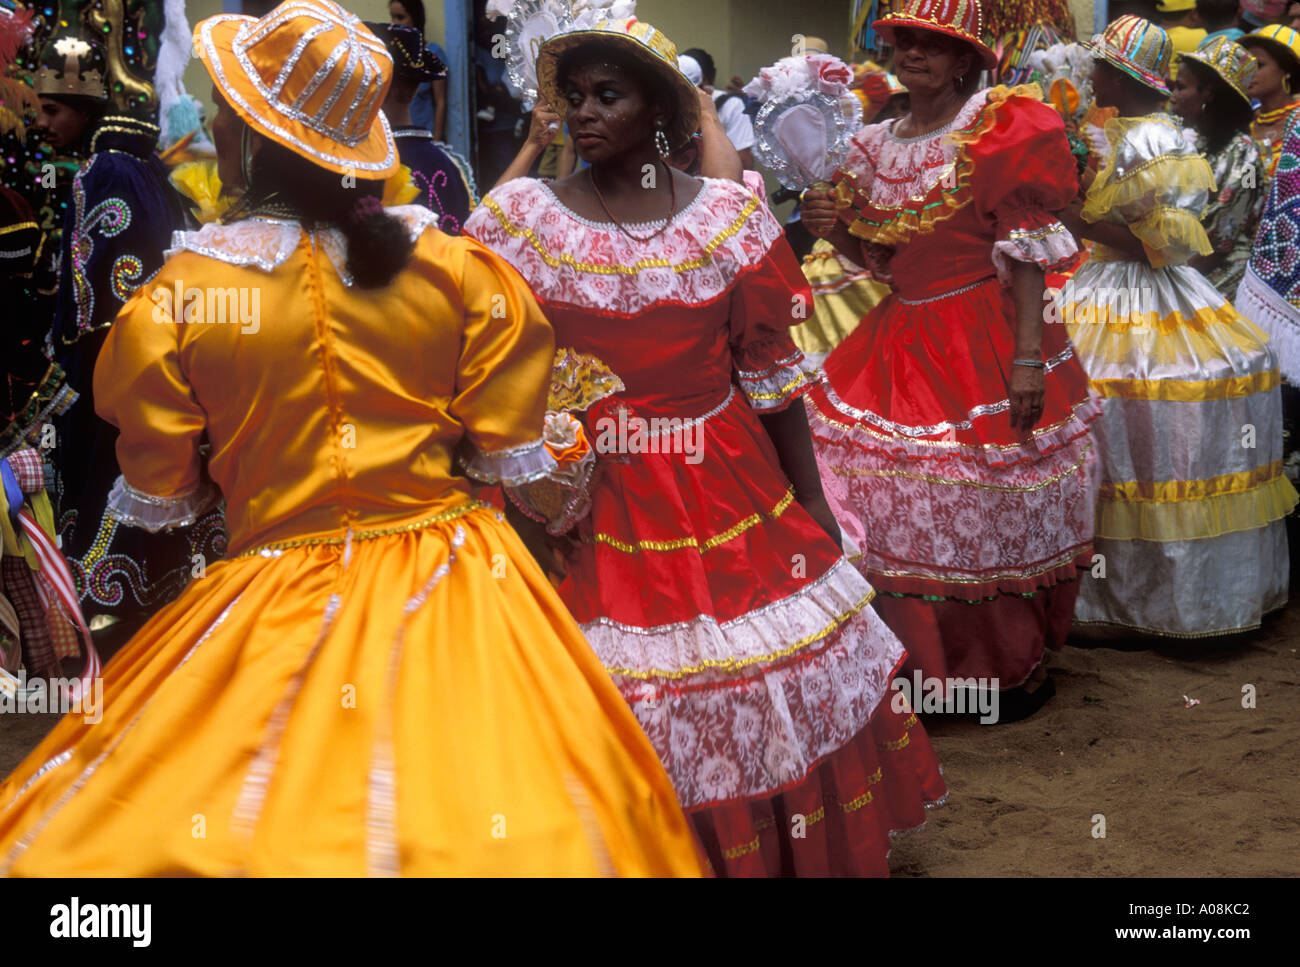 Folklore traditions culturelles rurales Maracatu femmes noires et colorées robes costumes typiques État Pernam descendant d'Africains Banque D'Images